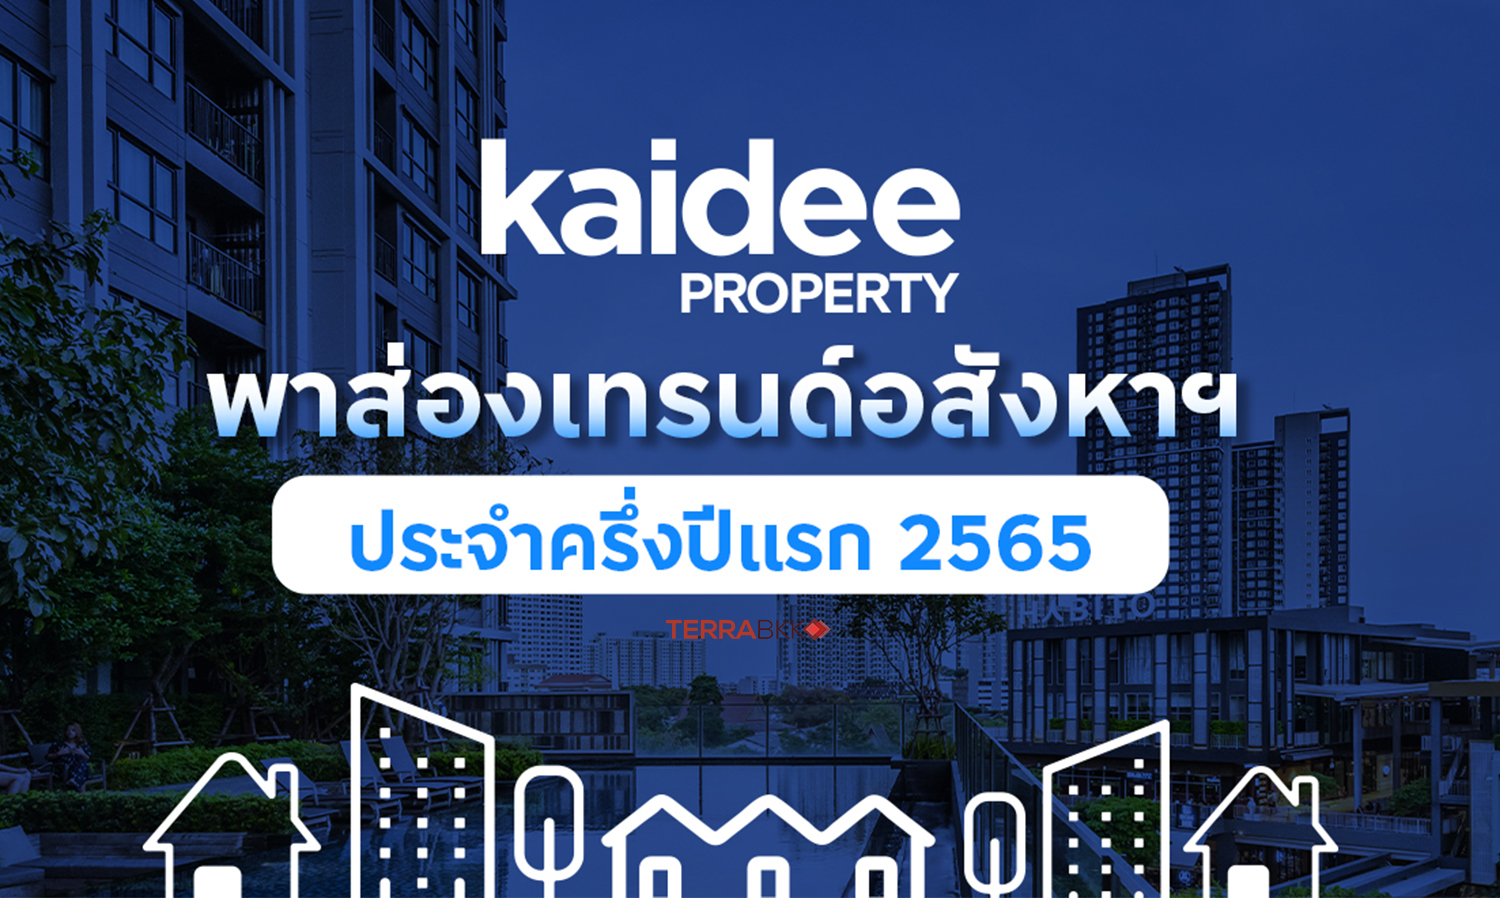 kaidee-property-เผยอินไซต์ครึ่งปีแรก-คนไทยคร